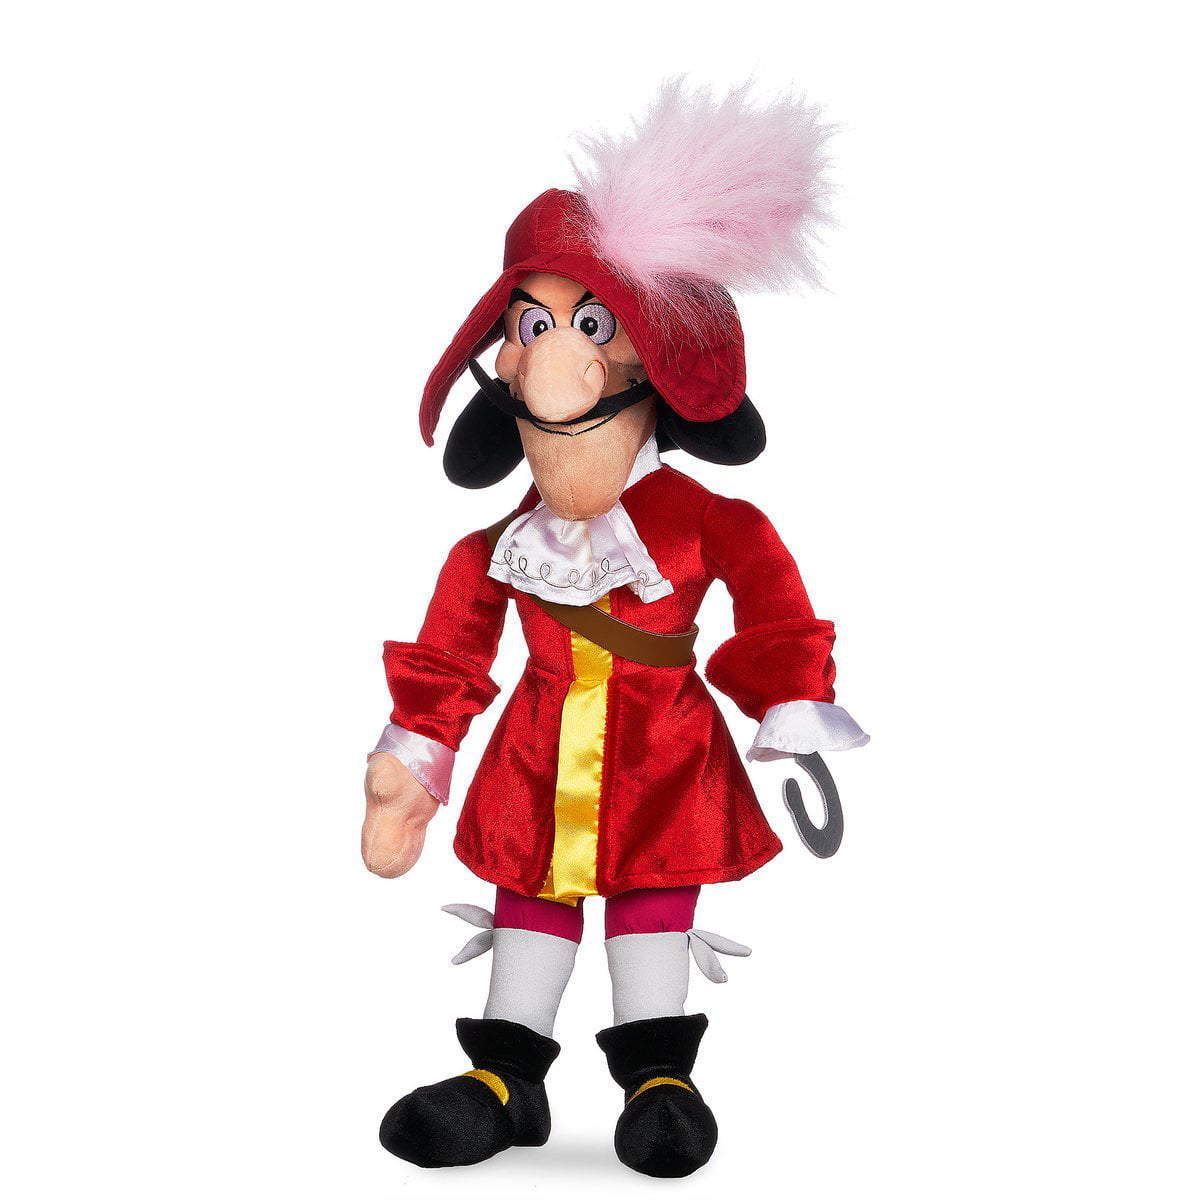 Disney Store Captain Hook Peter Pan Plush Doll Medium 21'' New